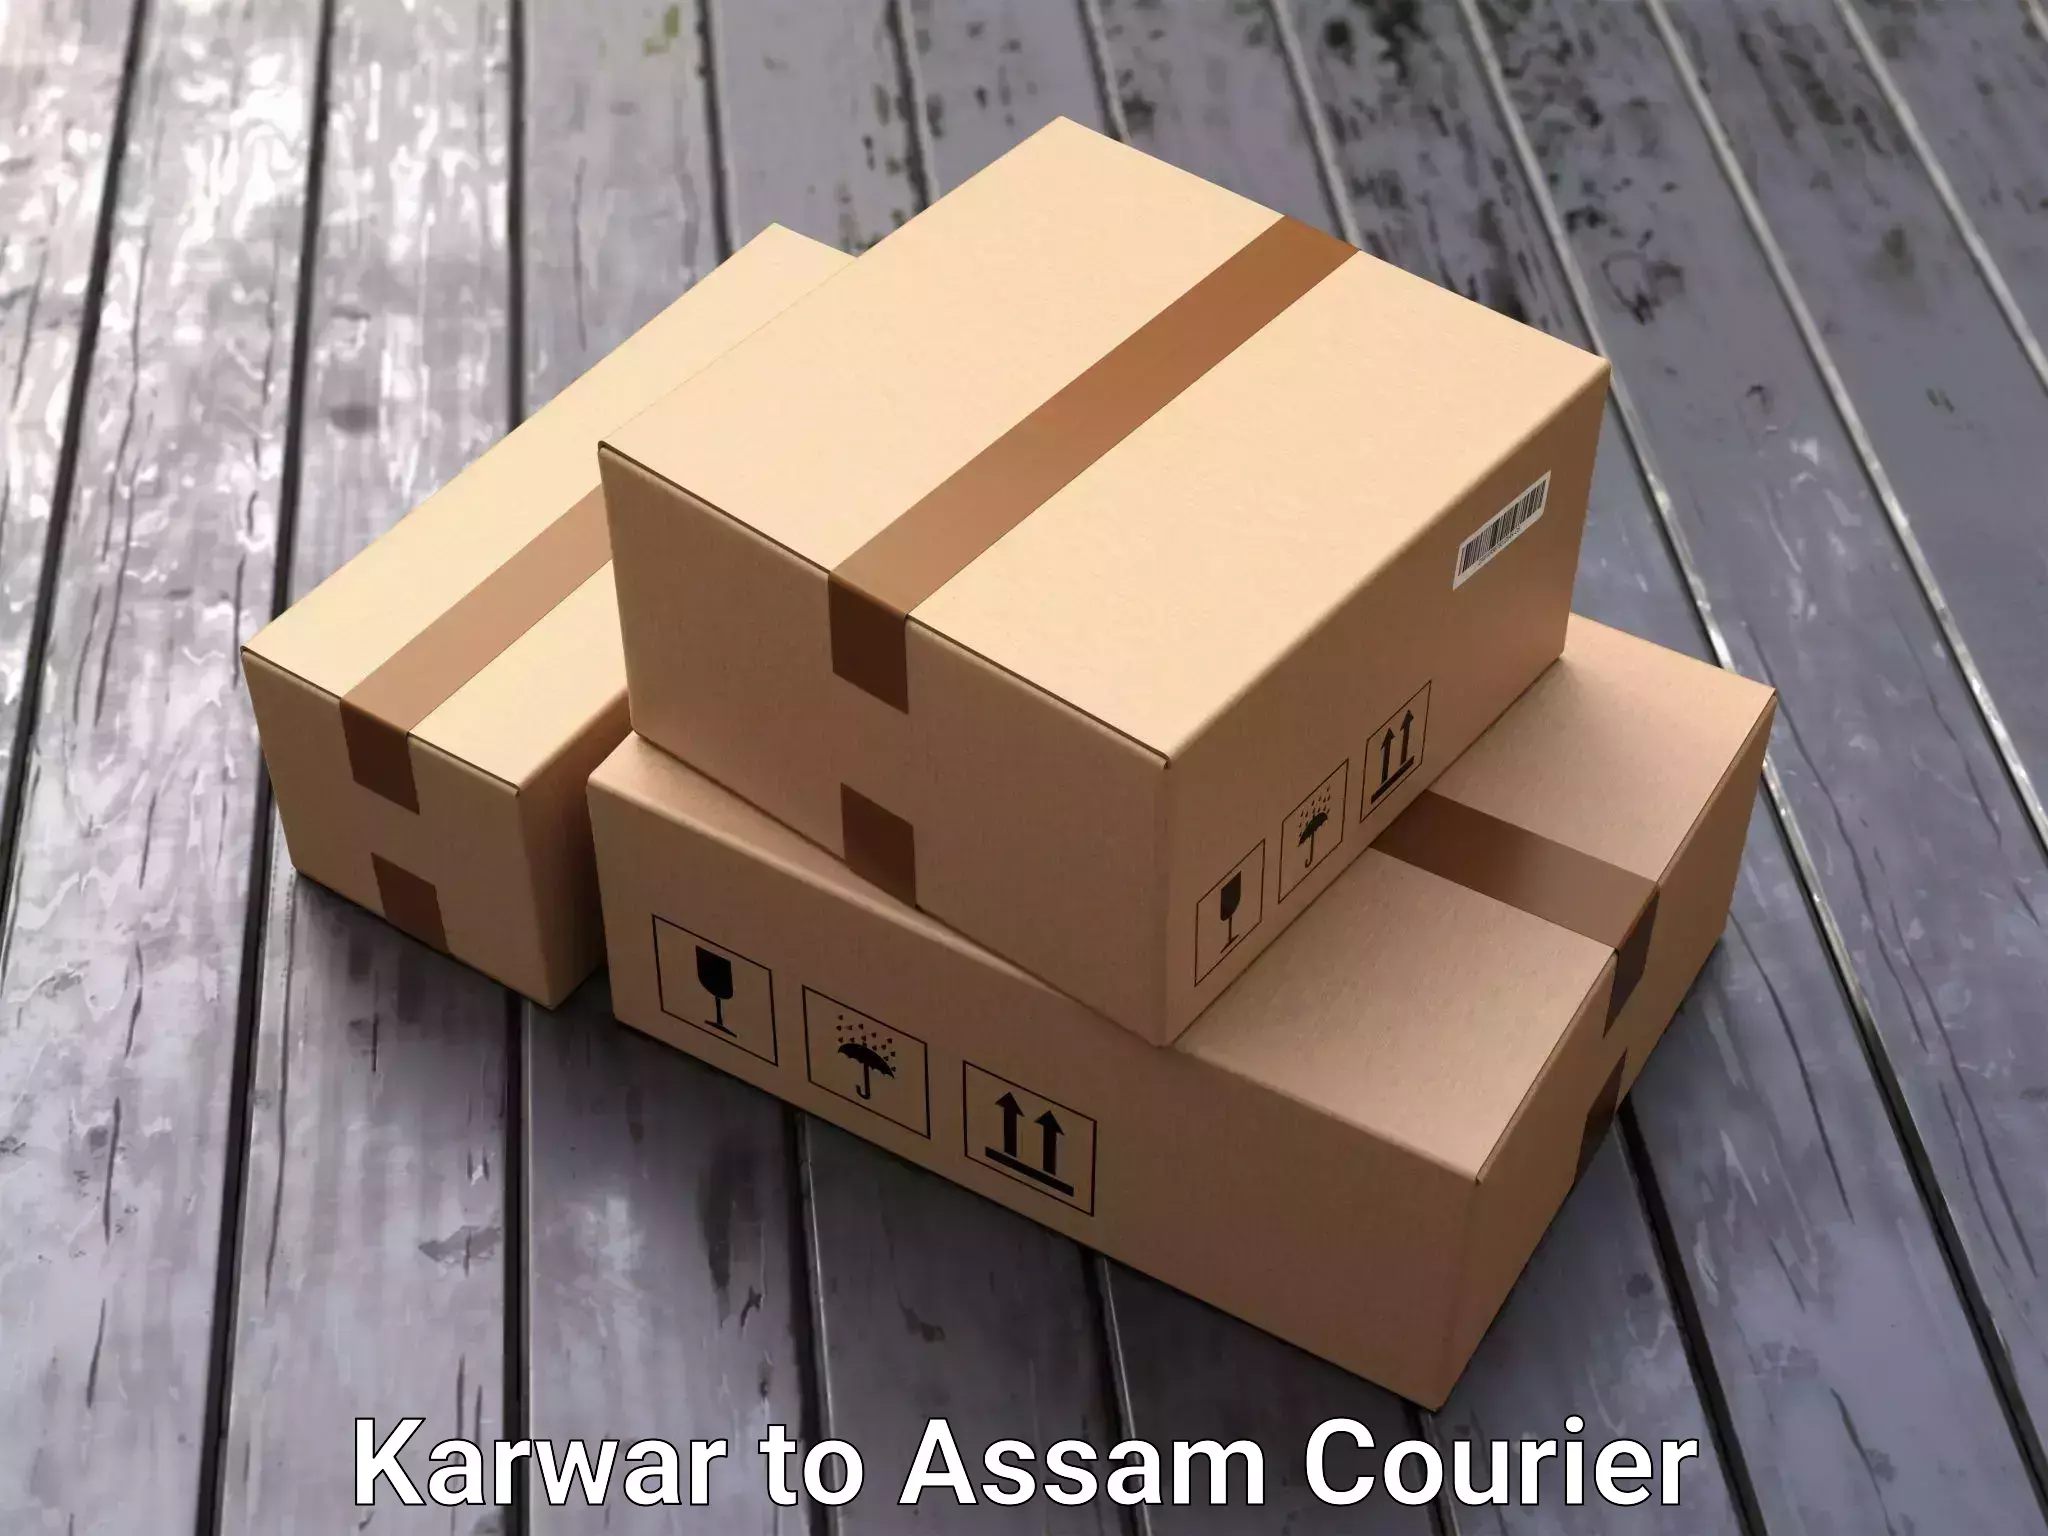 Professional furniture transport Karwar to Guwahati University